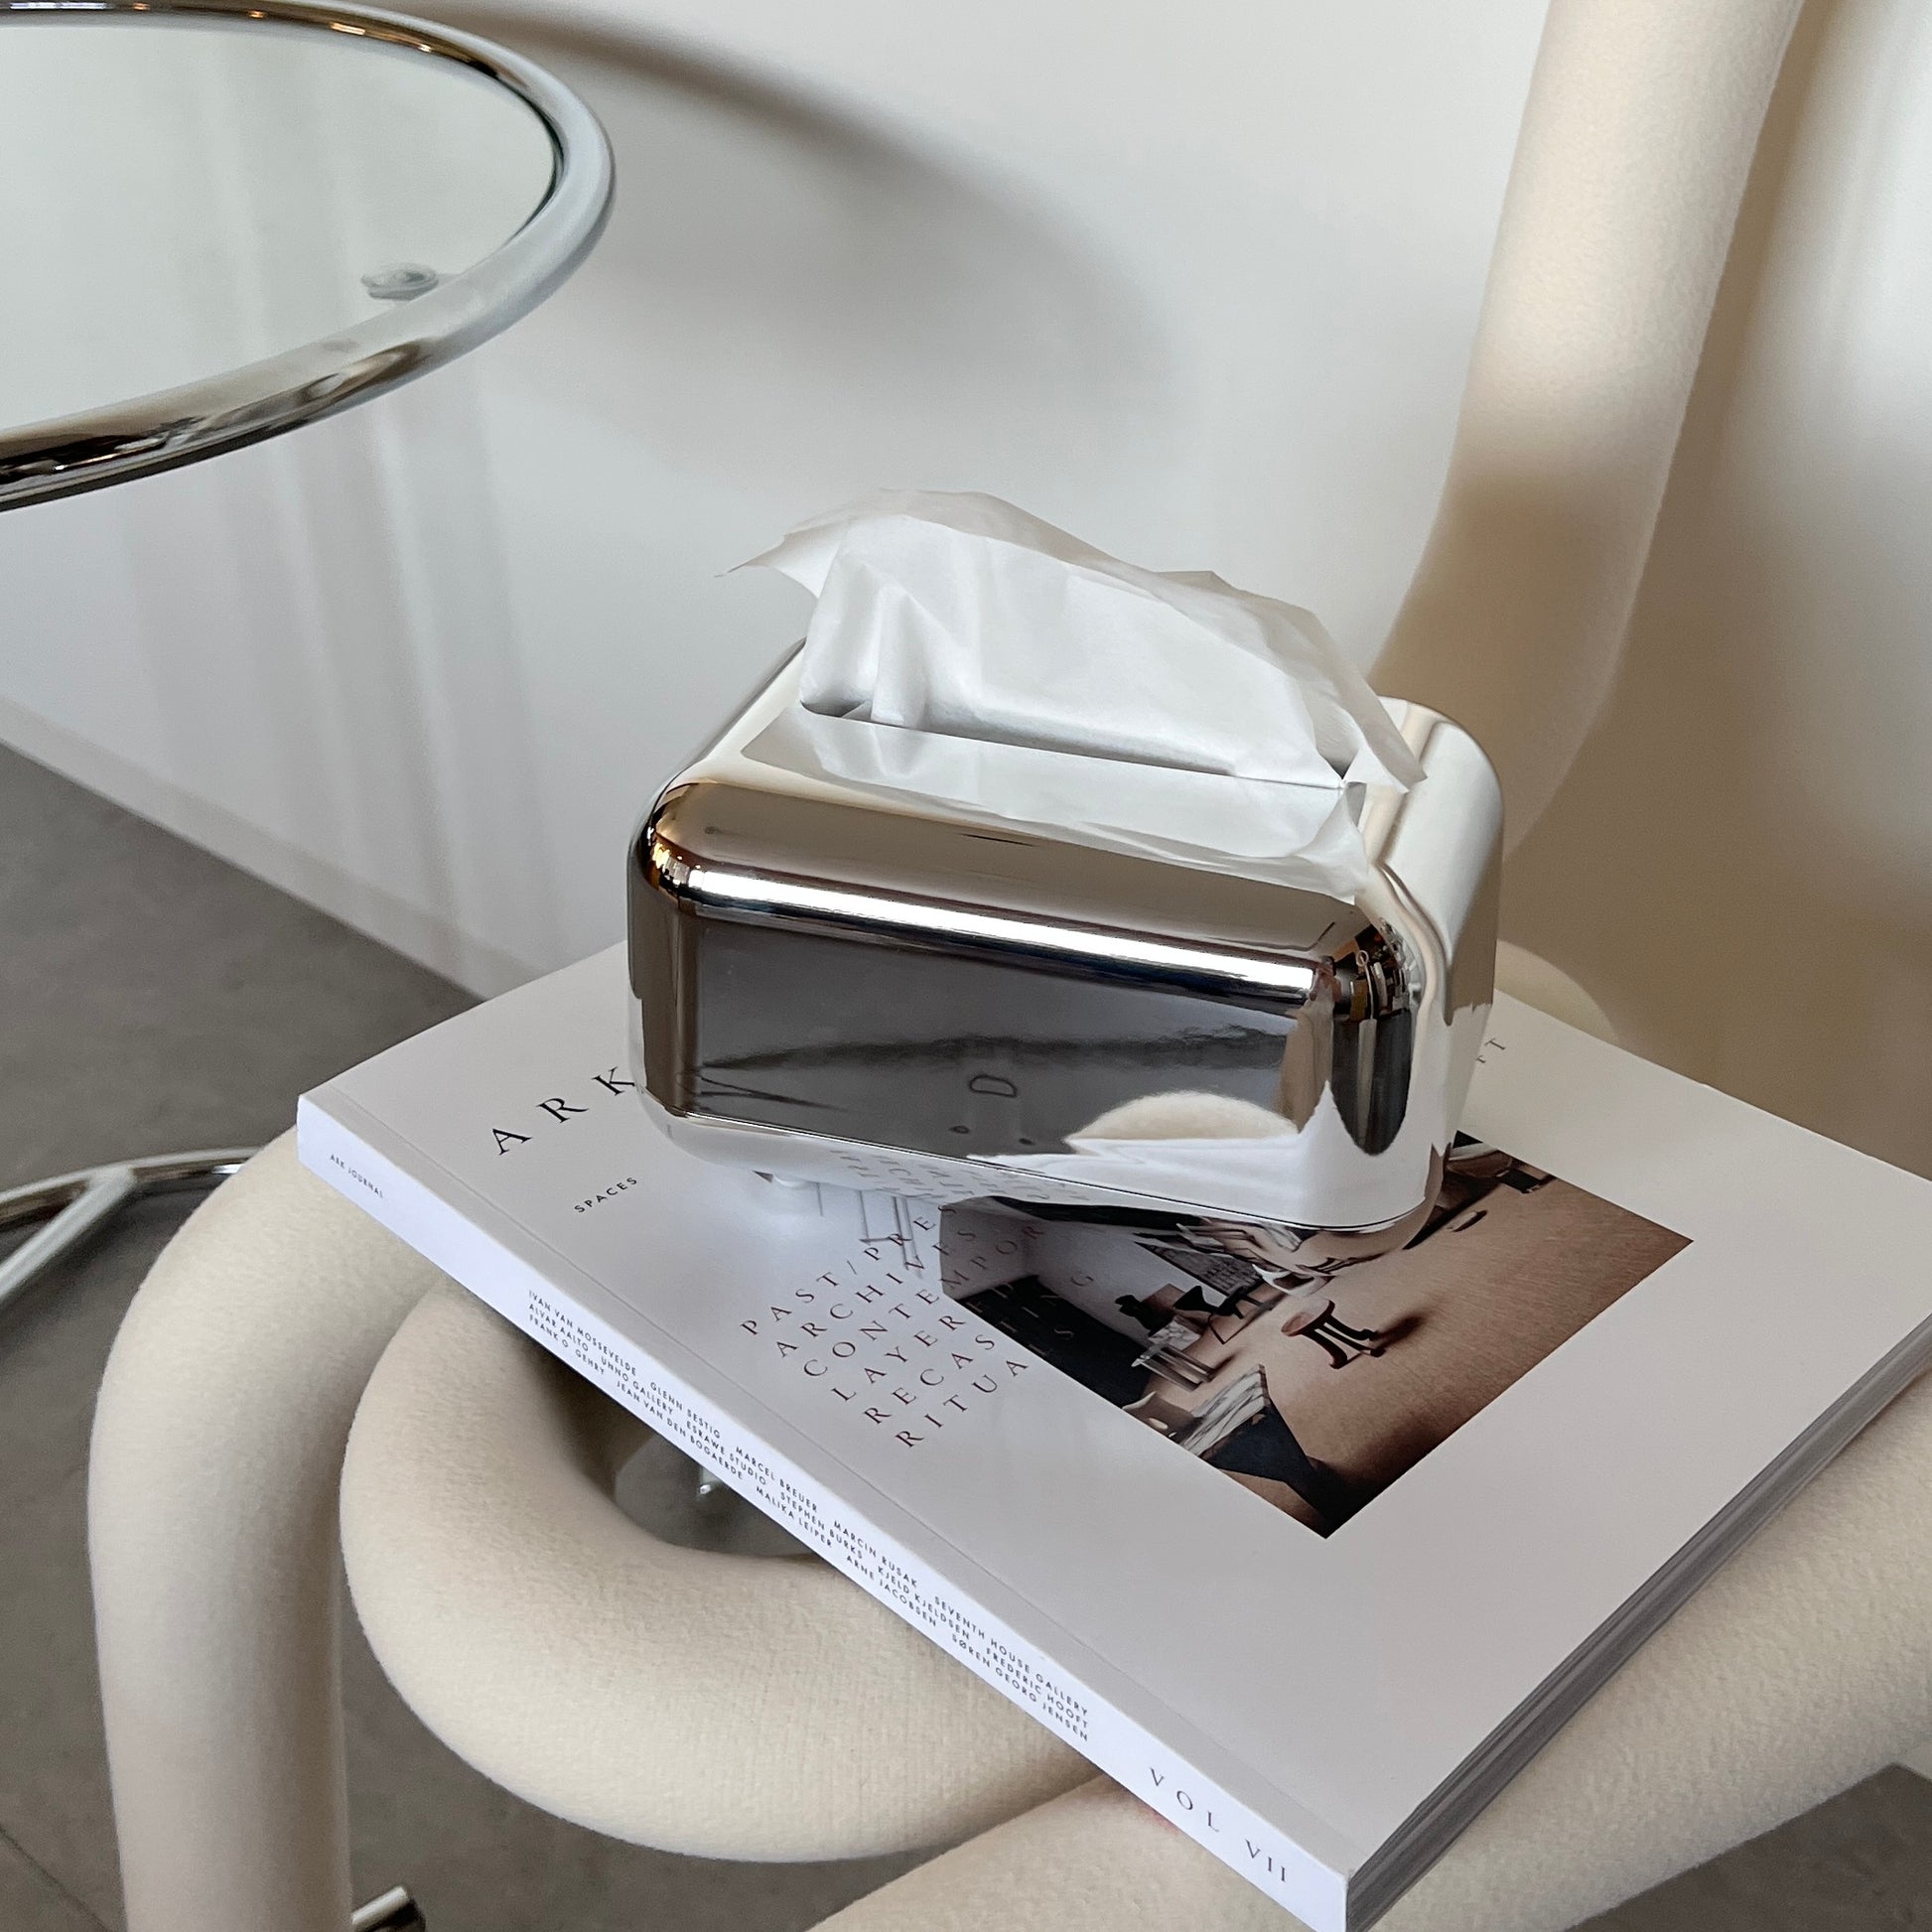 椅子の上に本の上に乗せられたツヤのあるメタルシルバーの脚付ティッシュケースが写っている写真